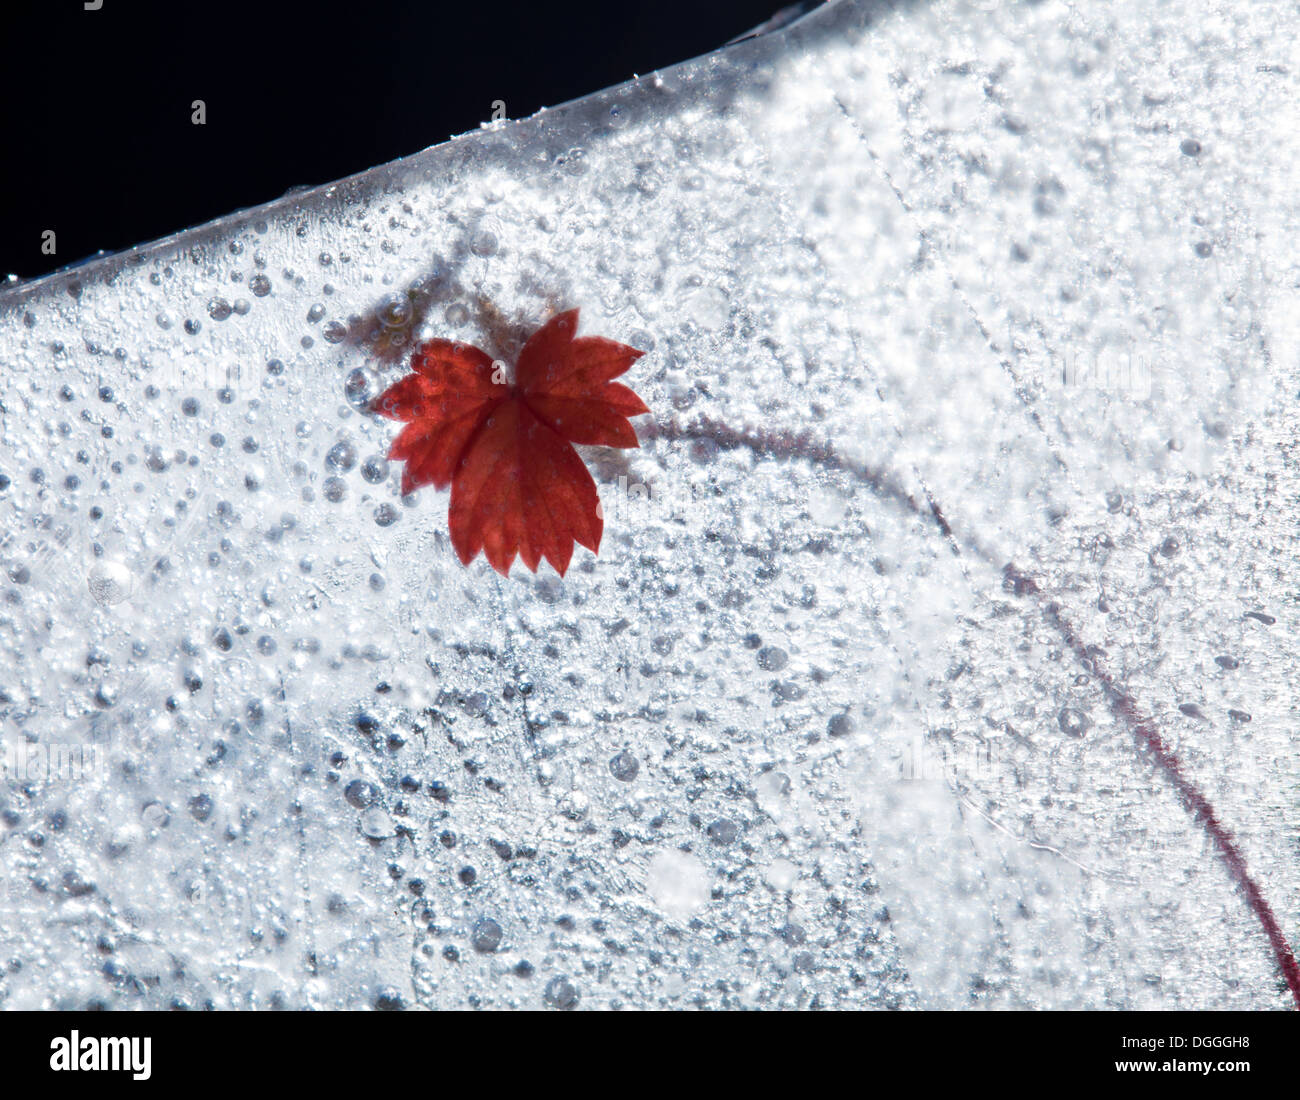 Plantes gelés - fraise sauvage asile gelée dans la glace, changement de saisons concept Banque D'Images